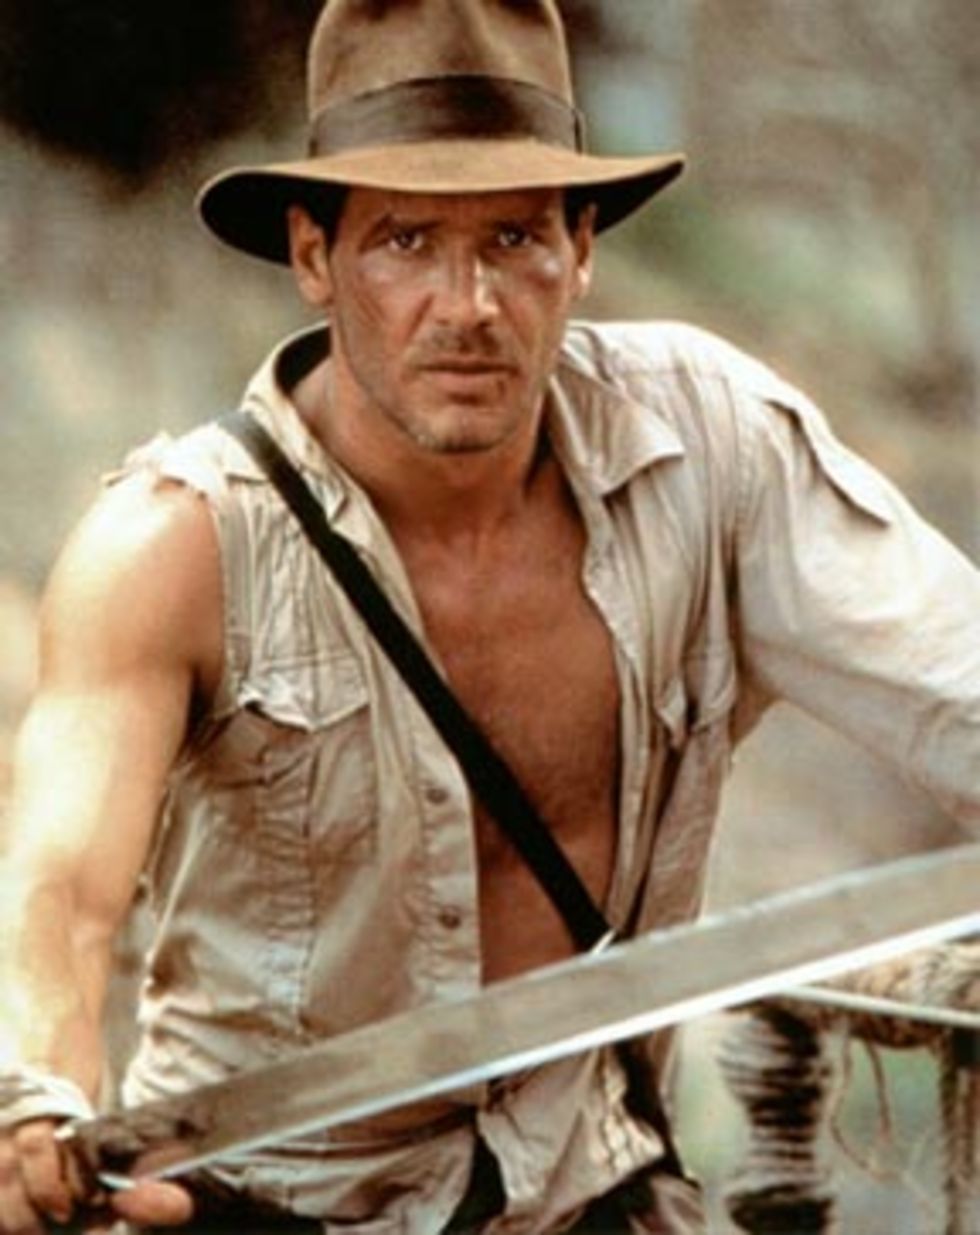 Vem försöker Indiana Jones egentligen lura?